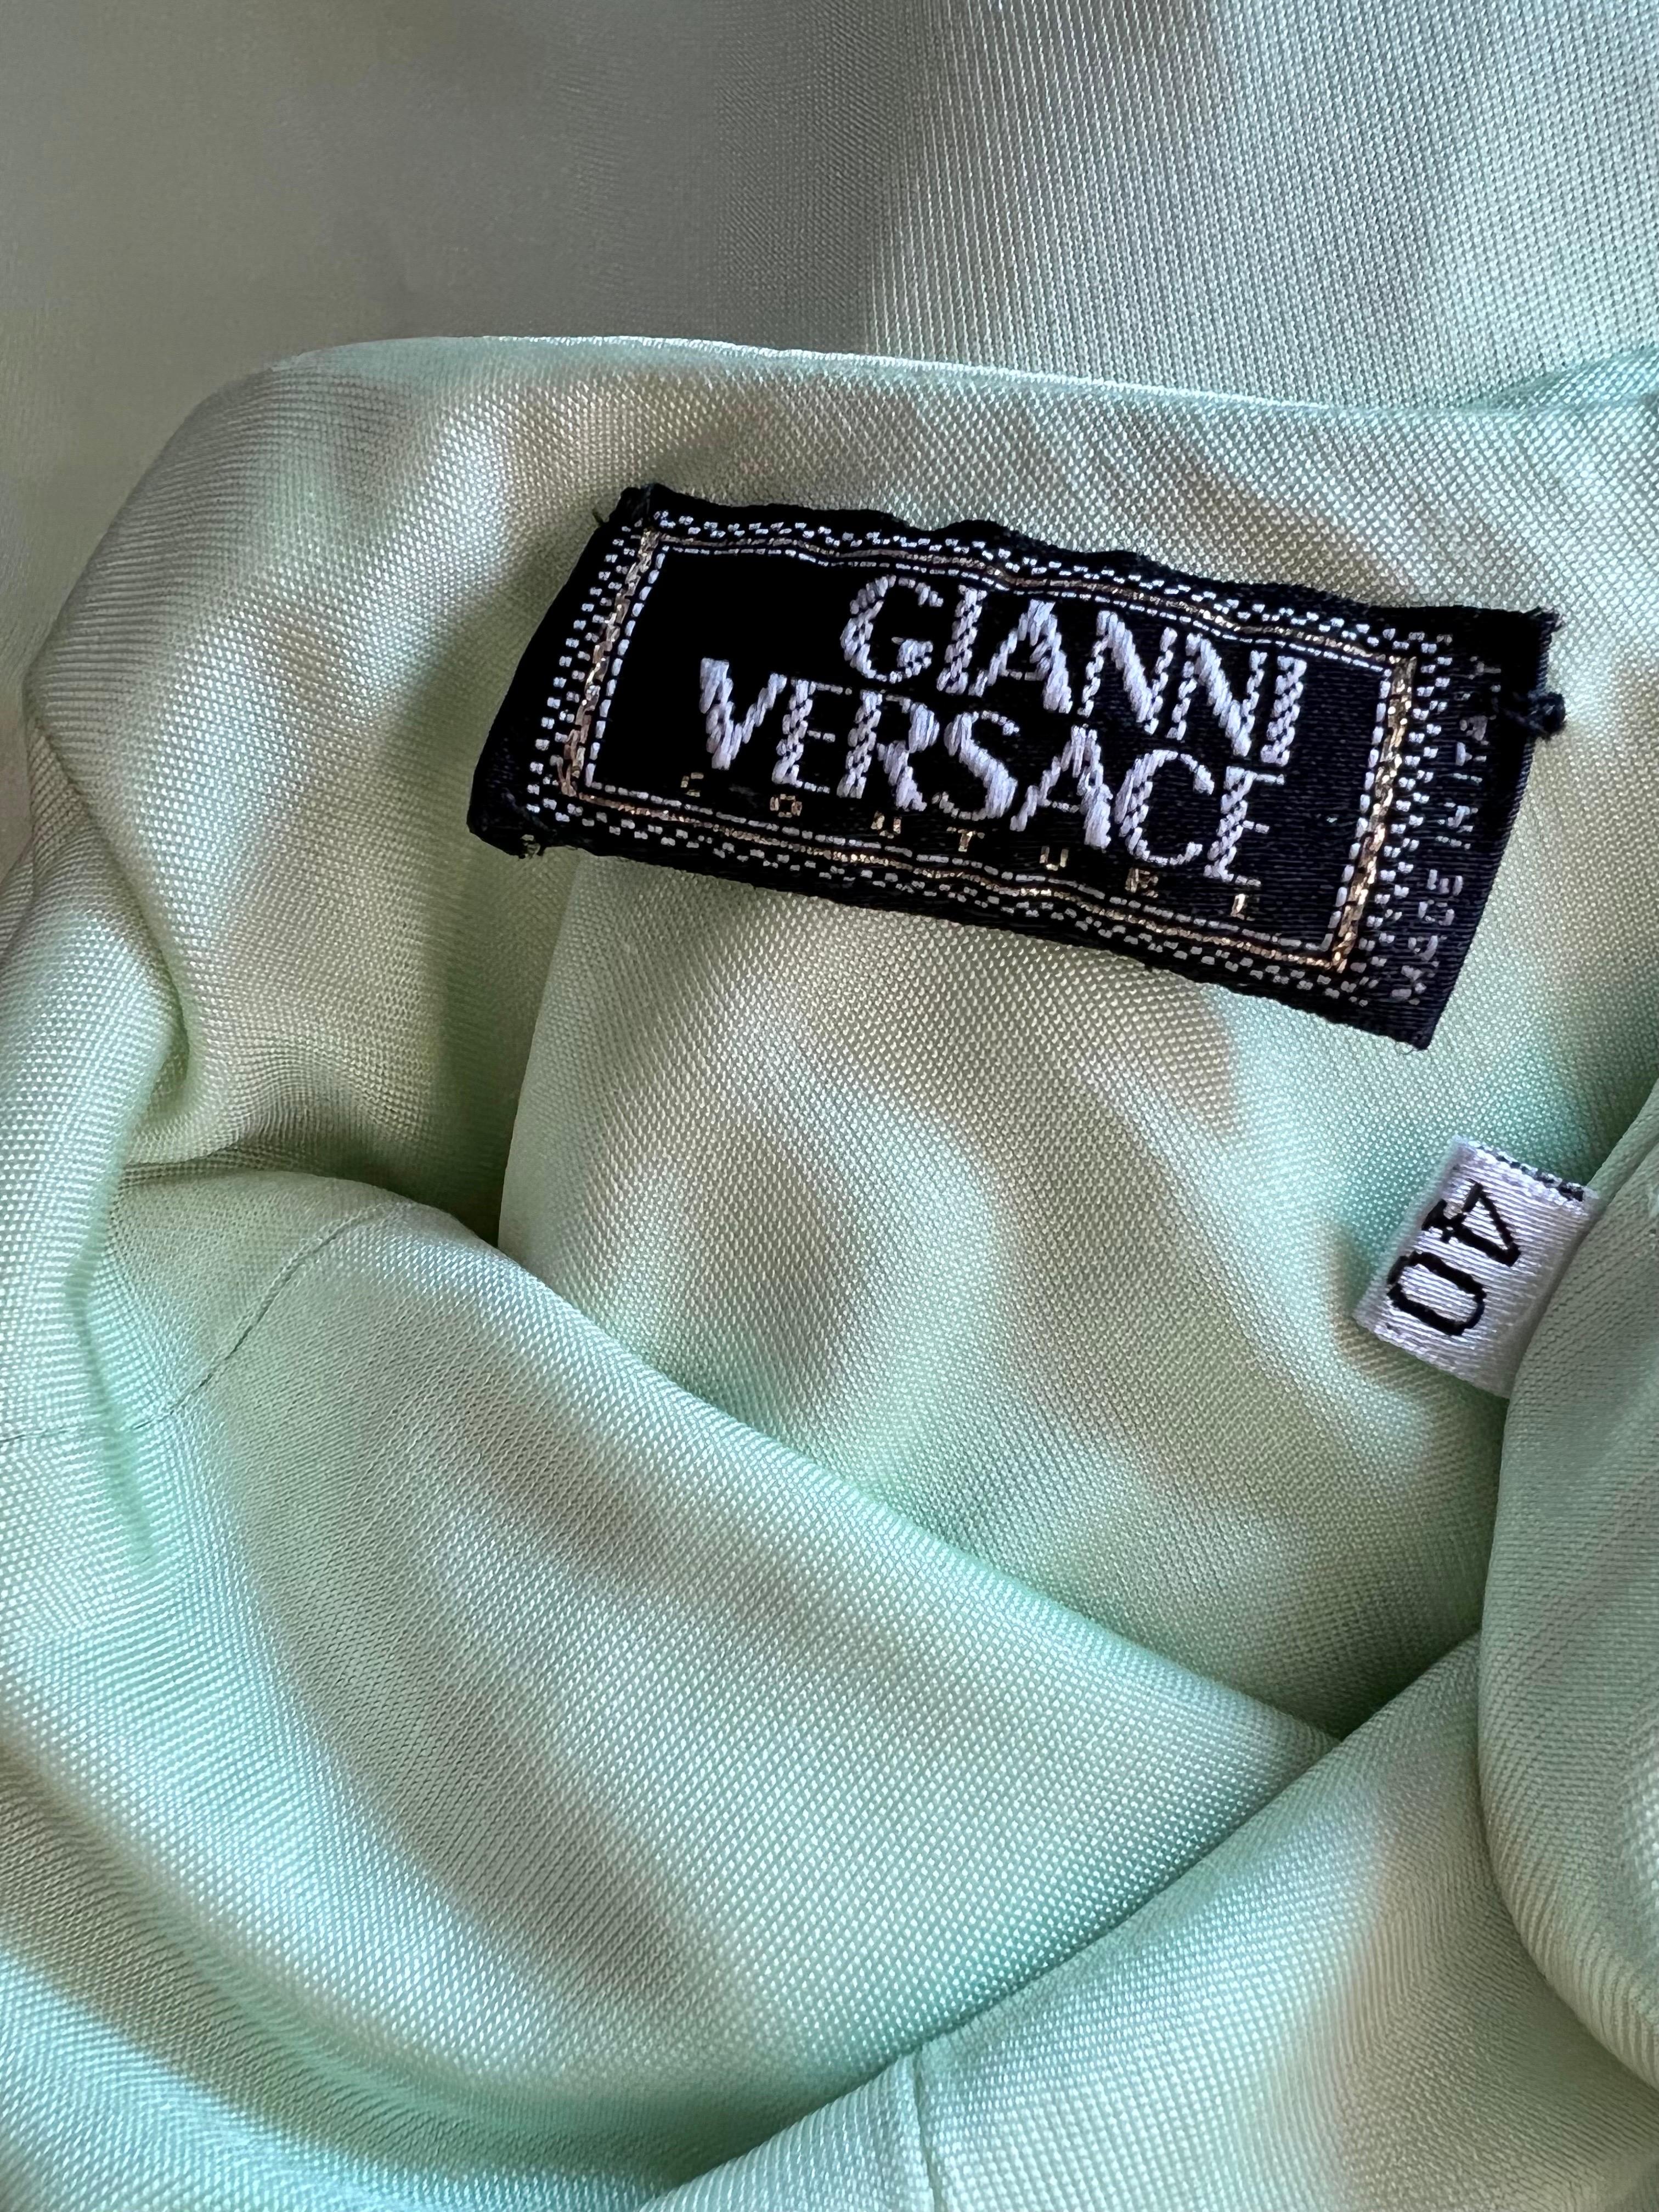 Gianni Versace S/S 1995 Runway Medusa Embellished Backless Slip Evening Dress For Sale 2